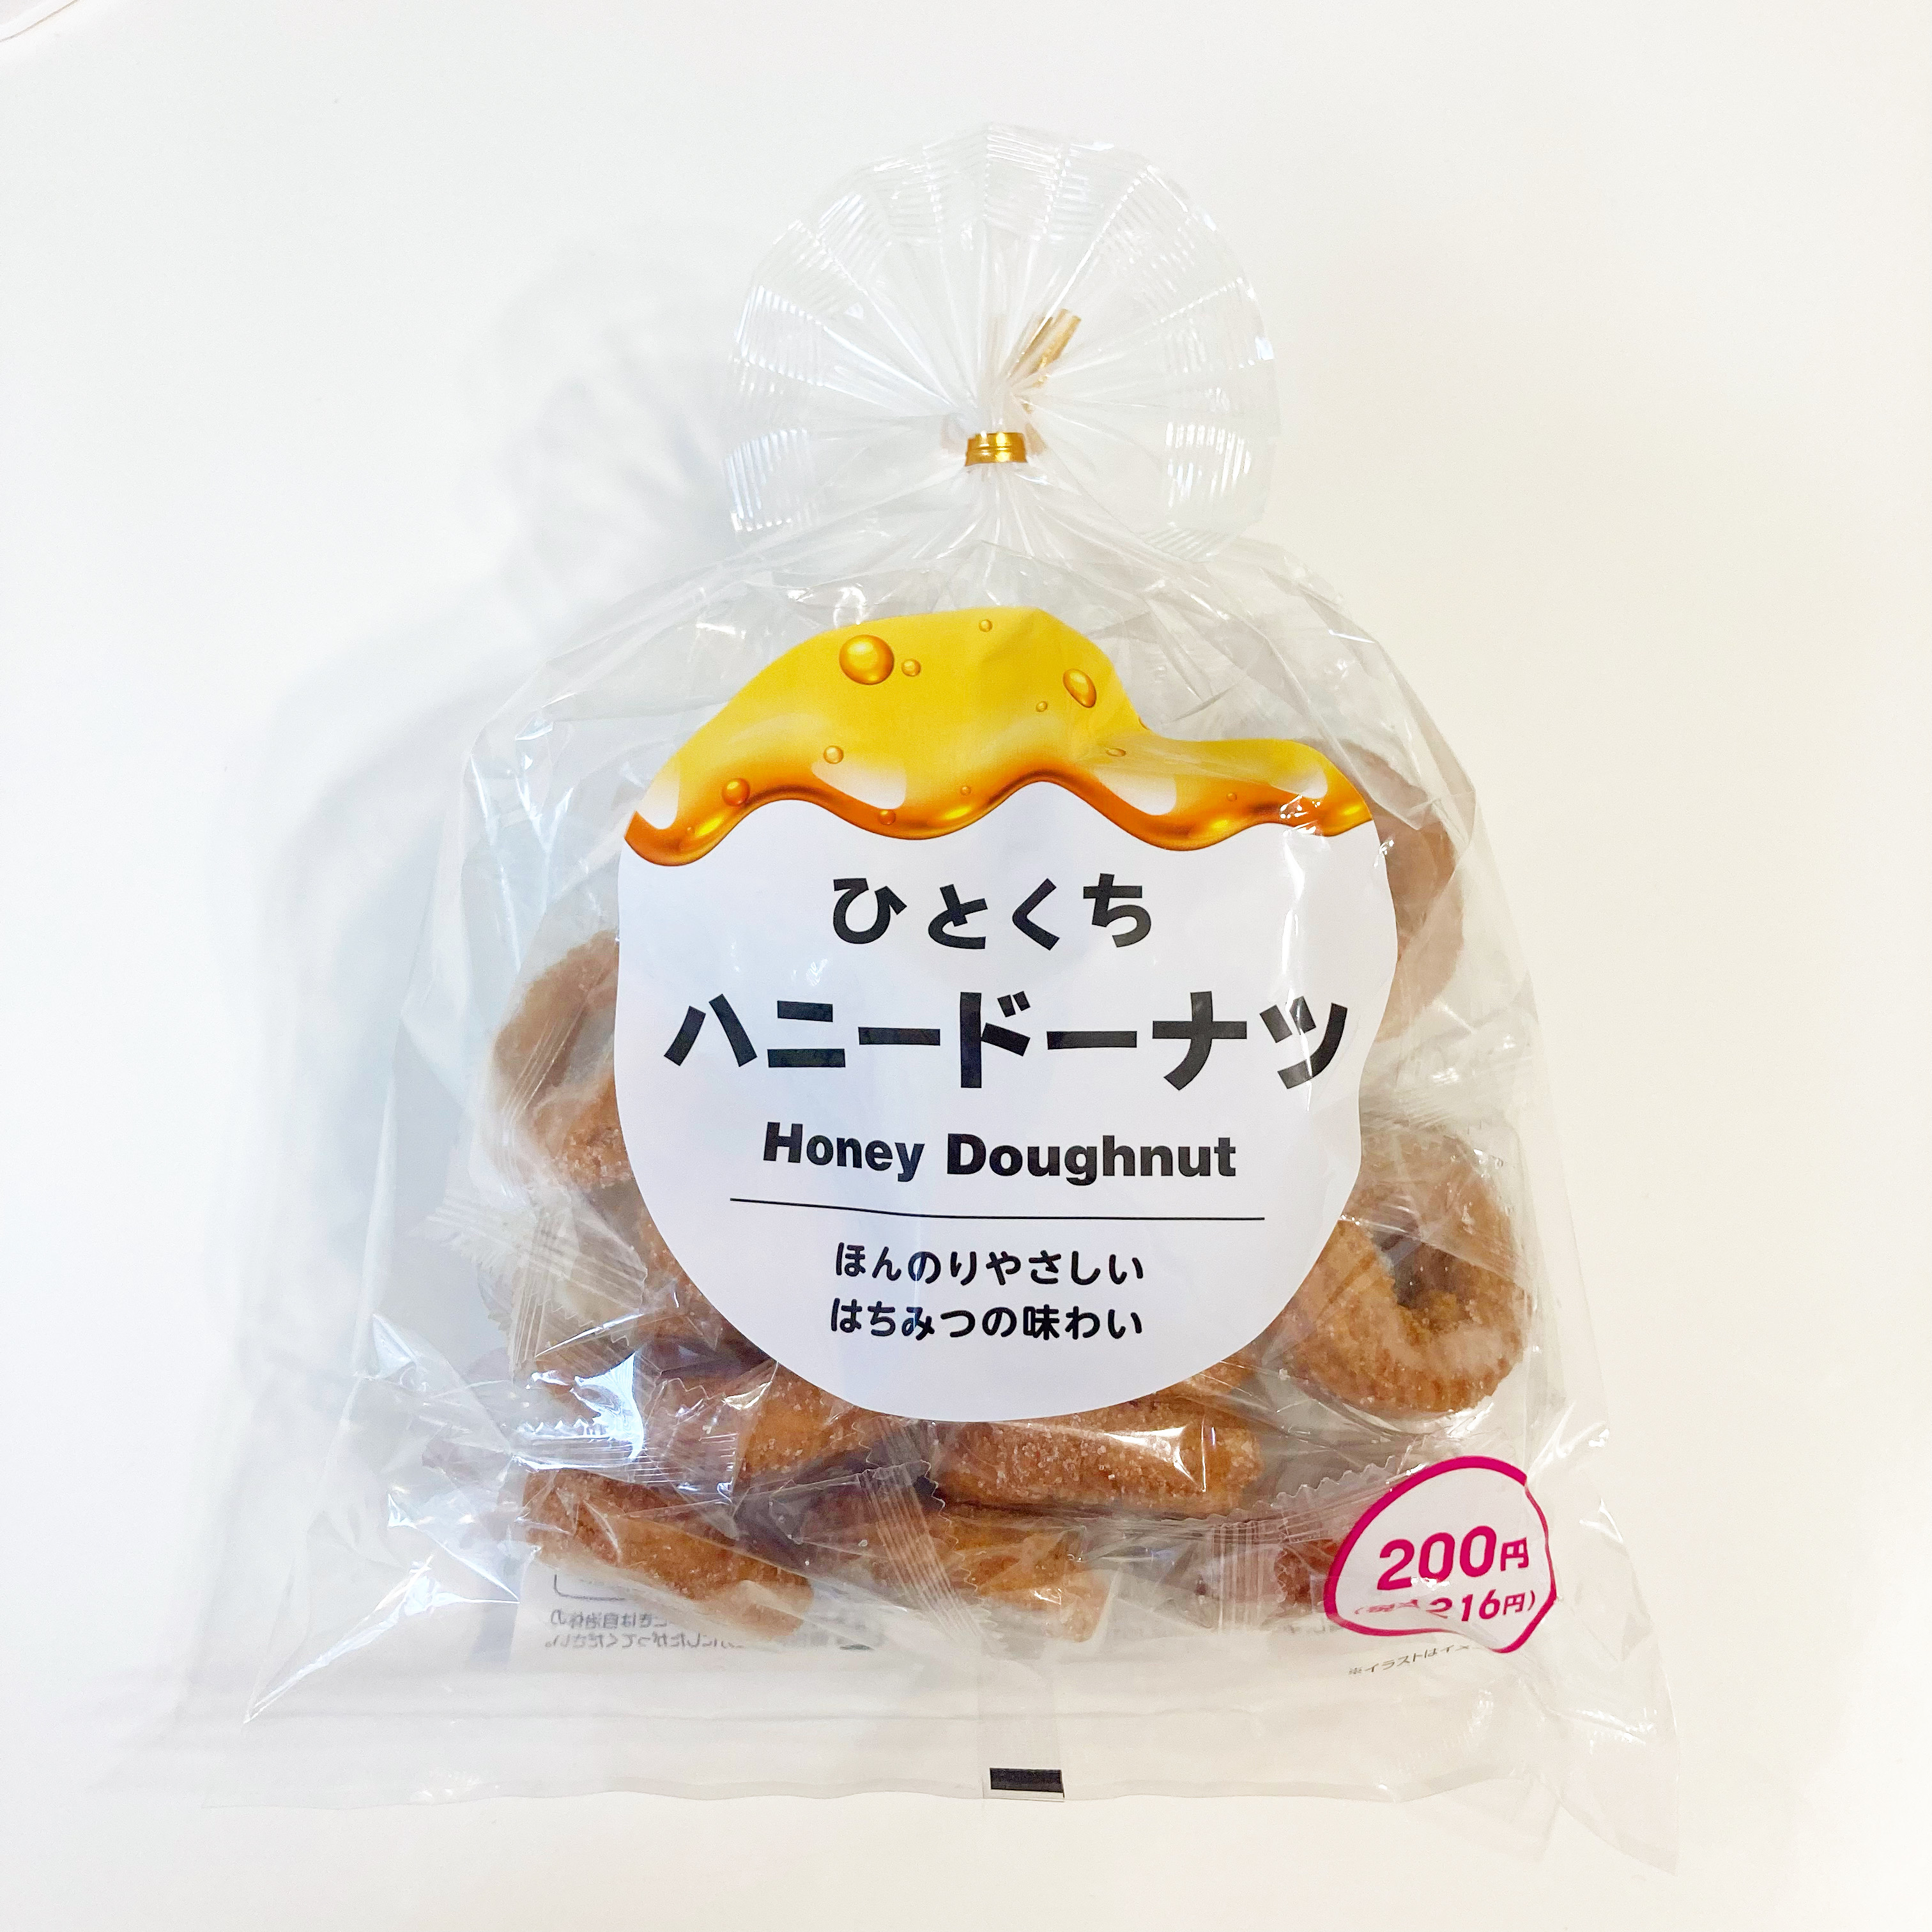 DAISO（ダイソー）のおすすめのお菓子「ひとくちハニードーナツ」